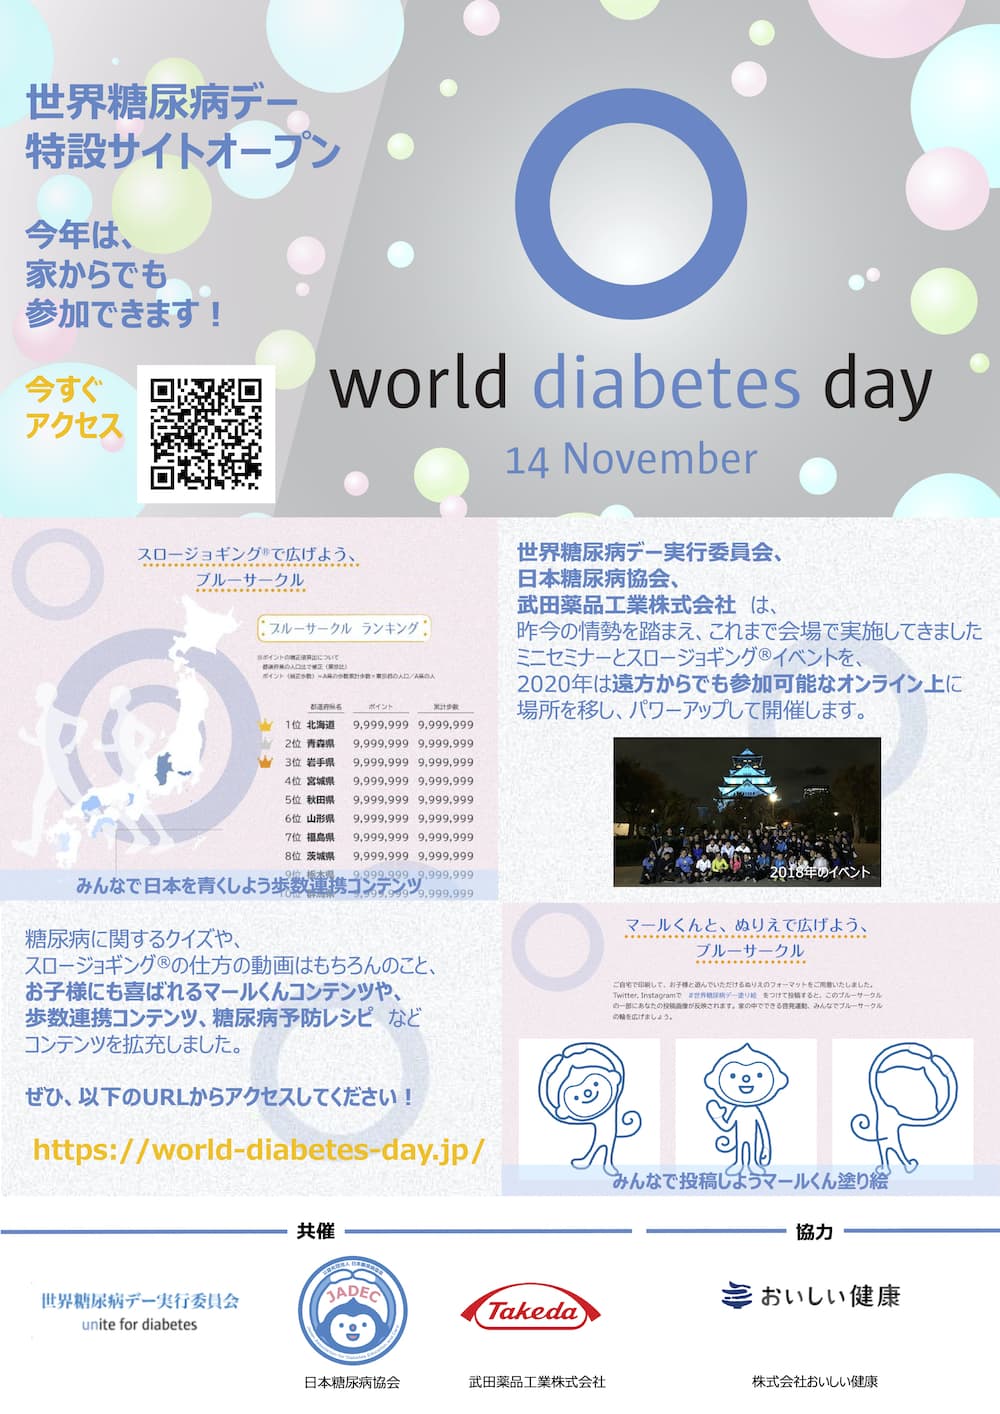 世界糖尿病デー特設サイト